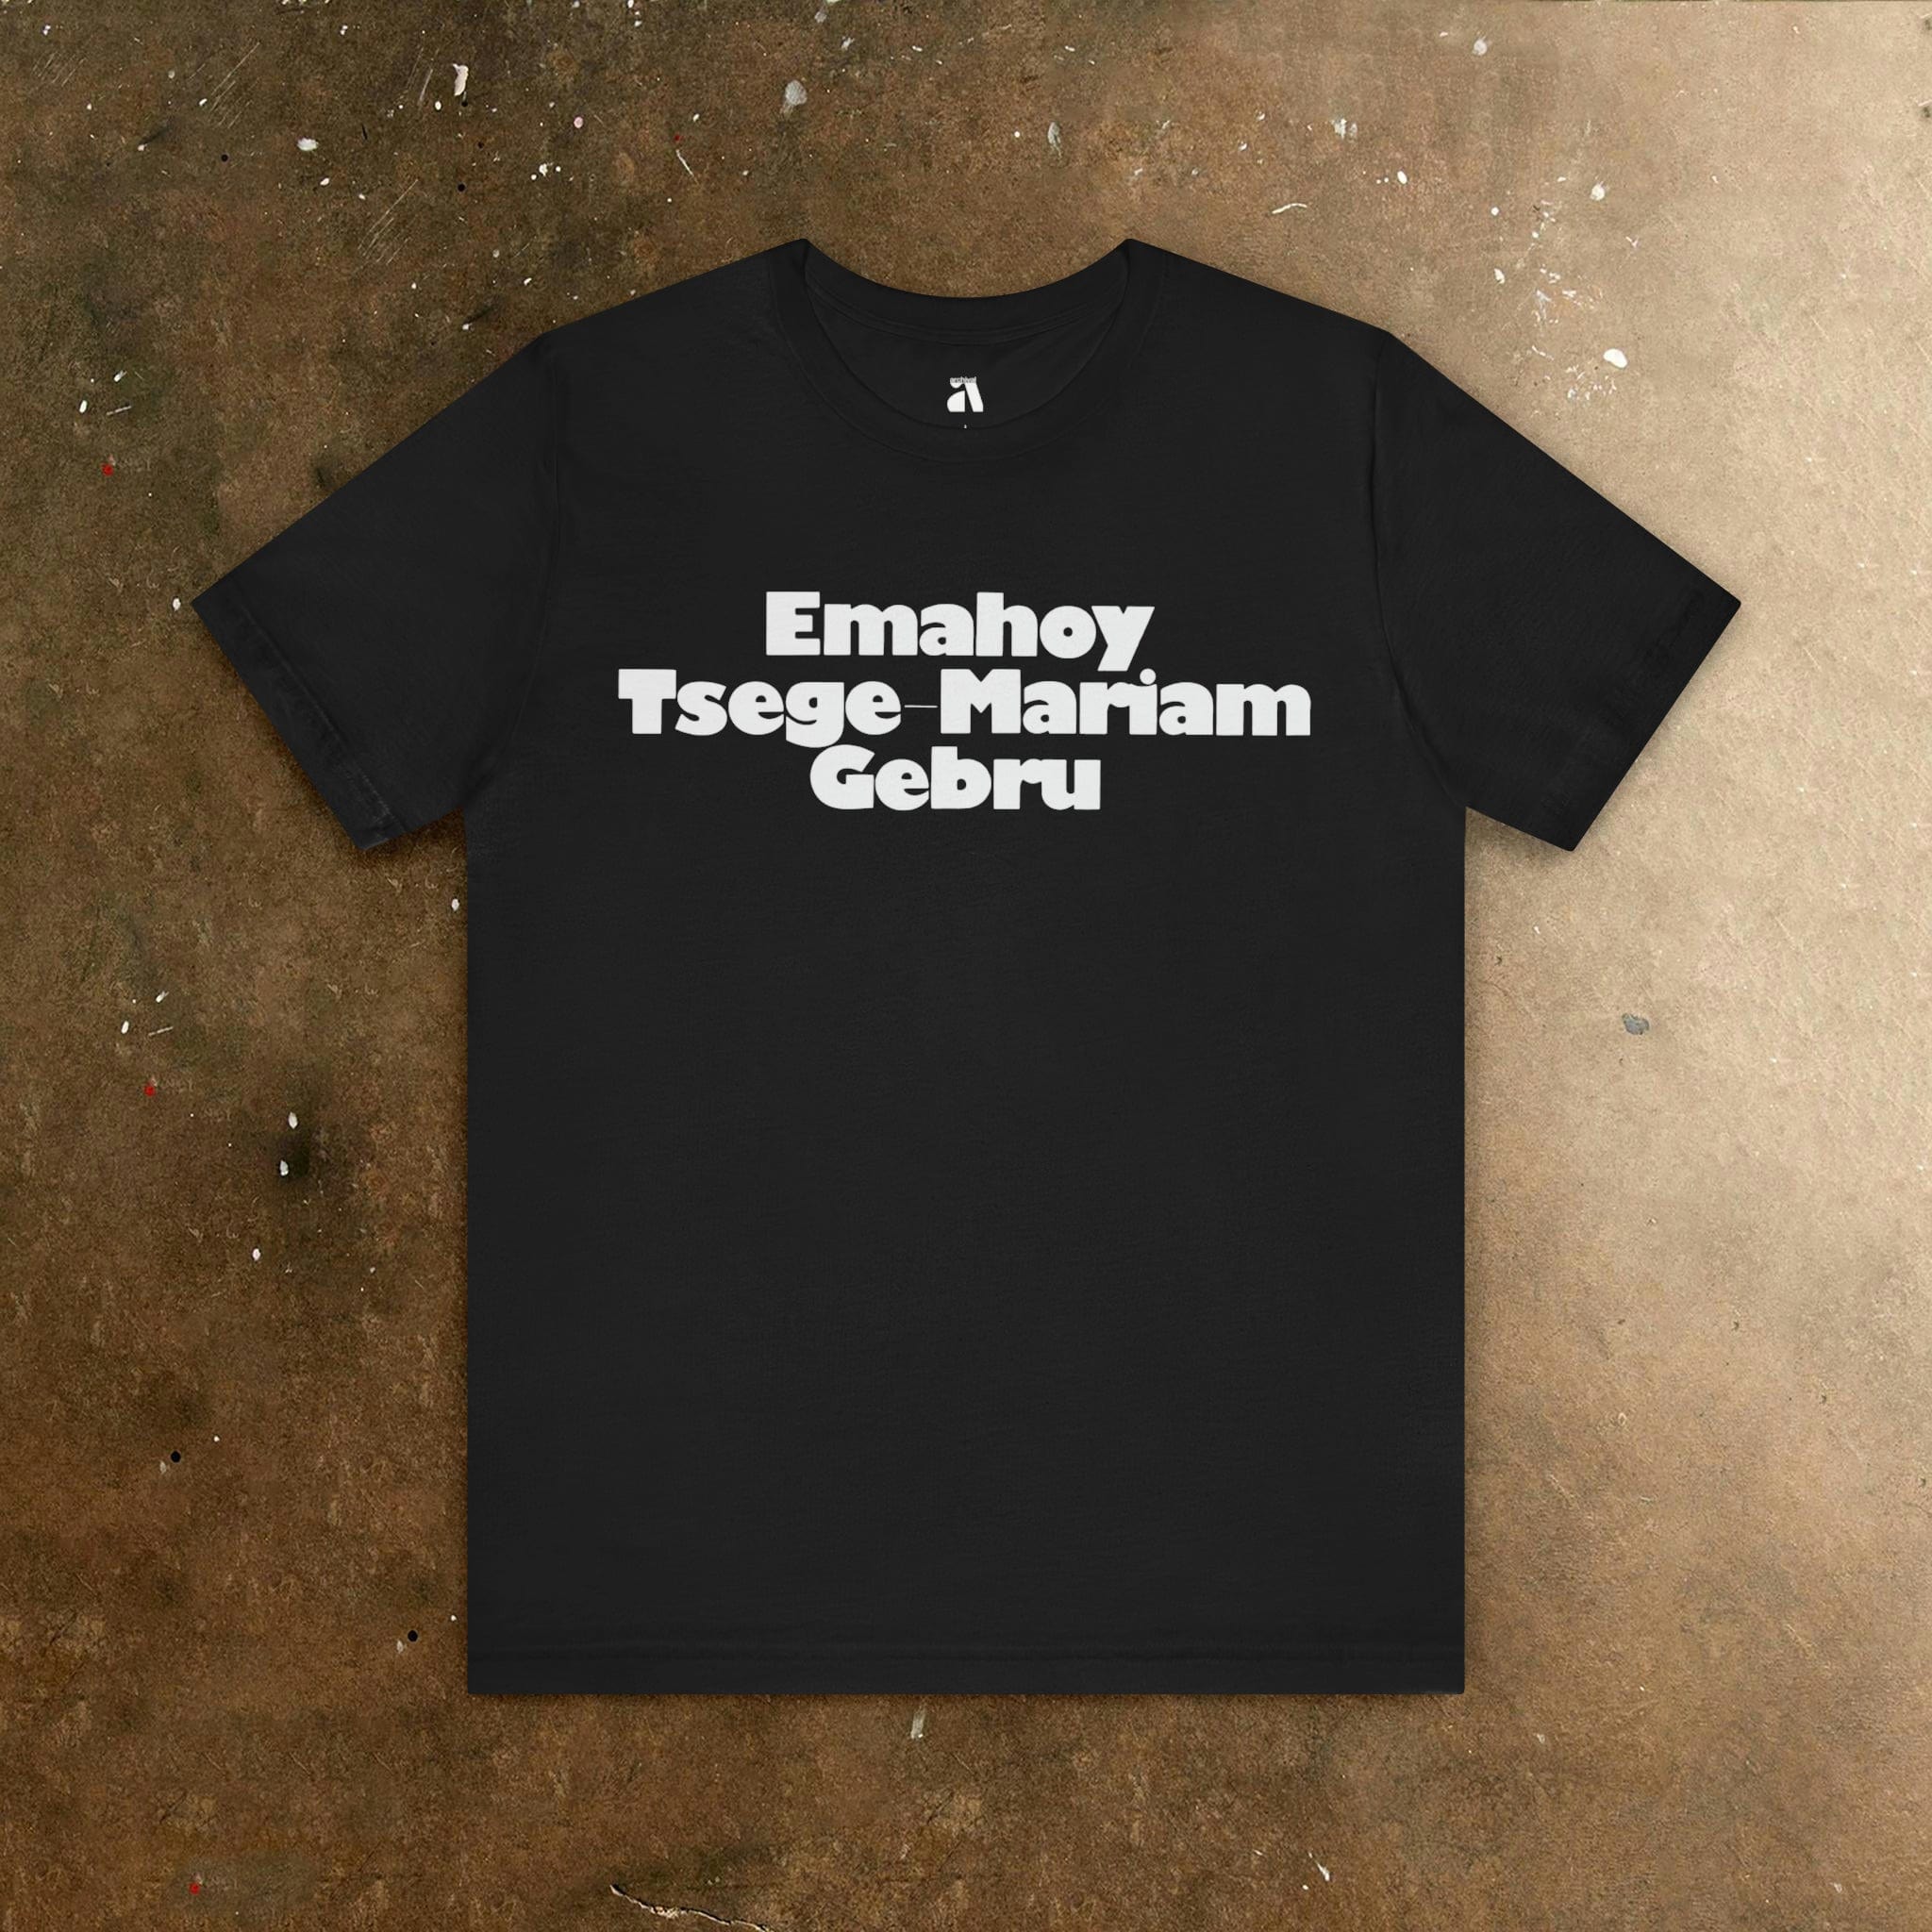 Emahoy Tsege-Miriam Gebru: Emblem T-Shirt